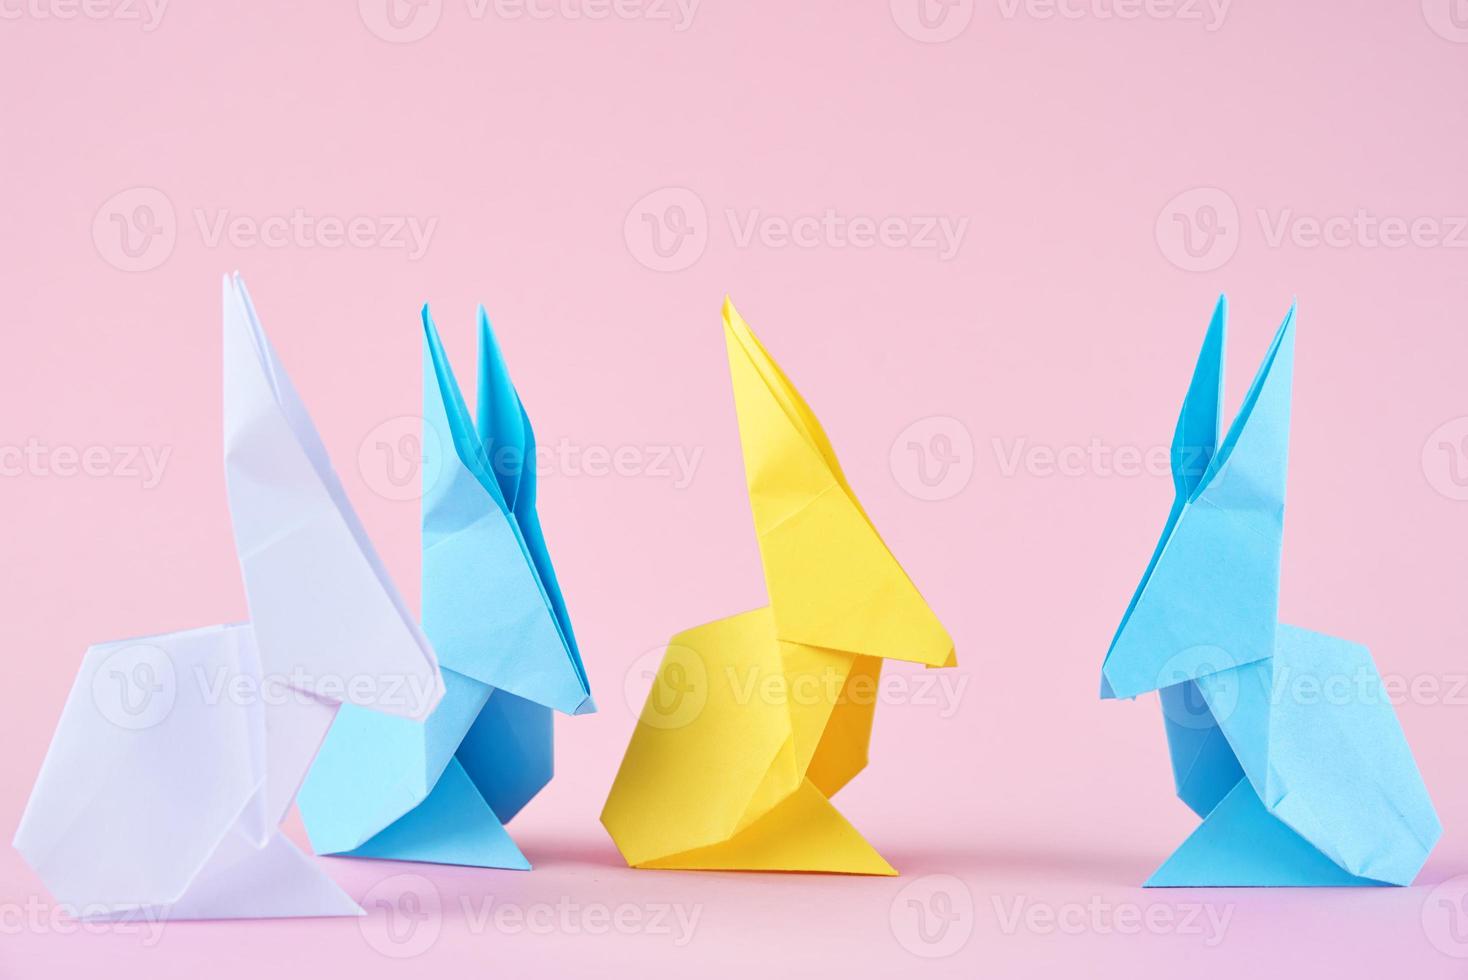 lapins d'esater origami colorés en papier sur fond rose photo